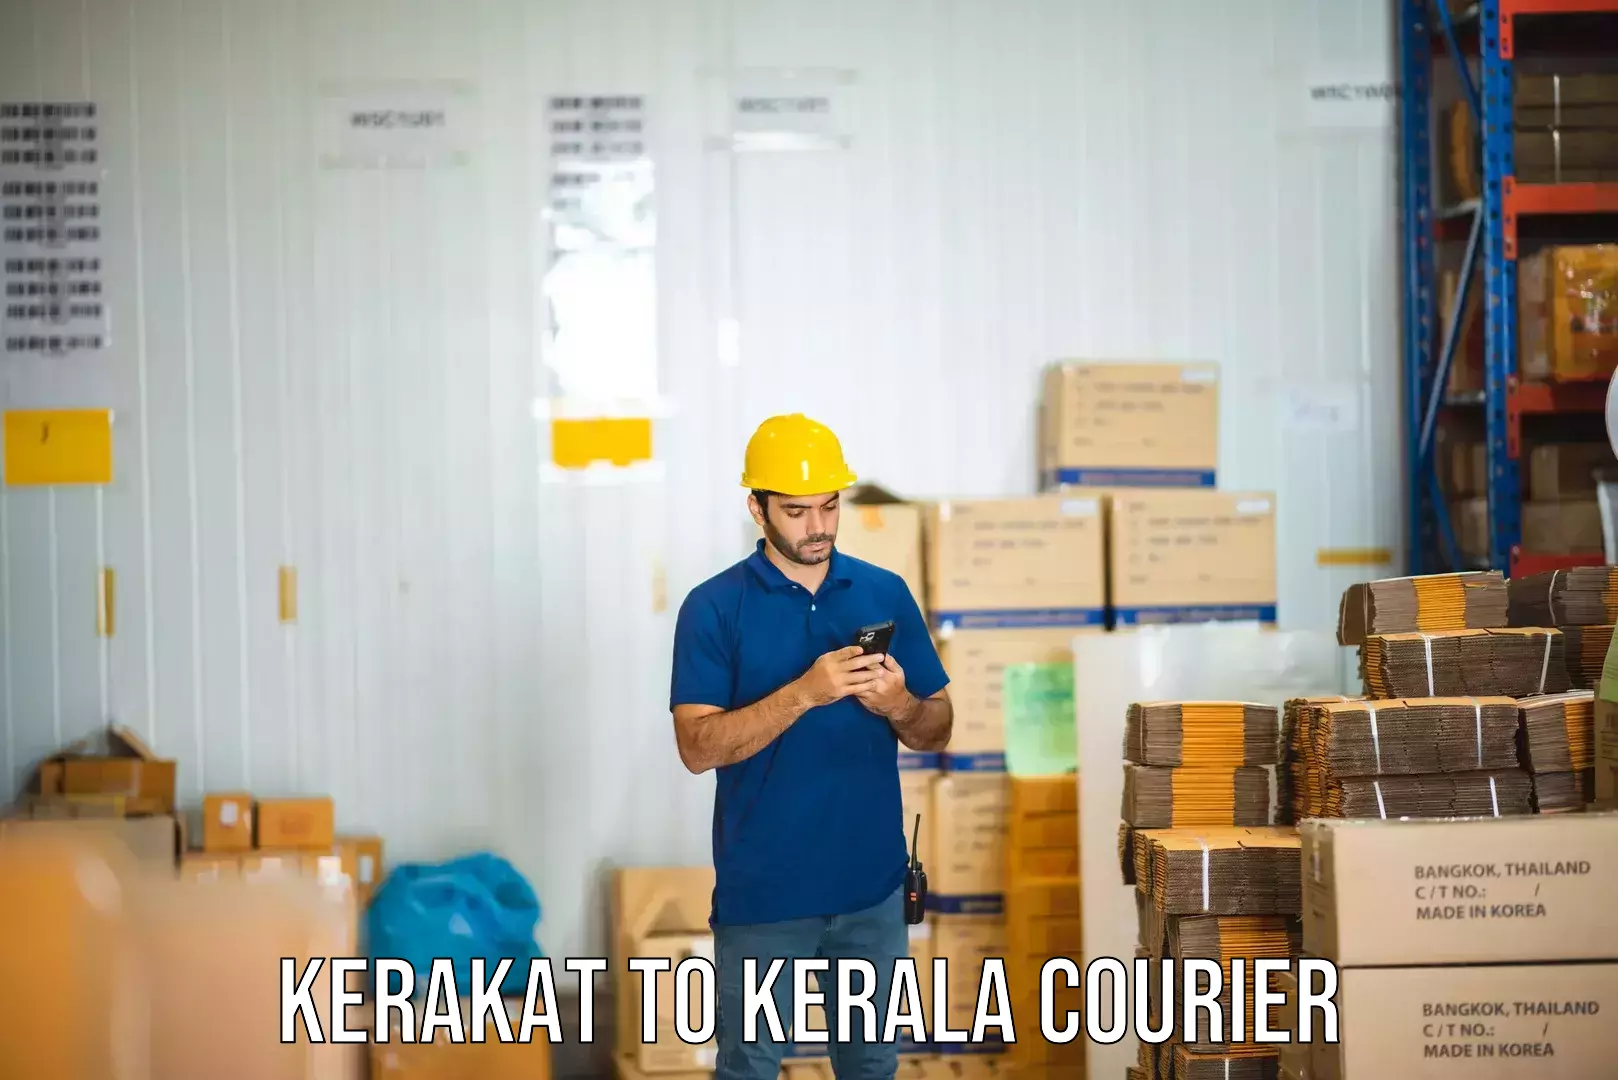 Local courier options Kerakat to Alathur Malabar